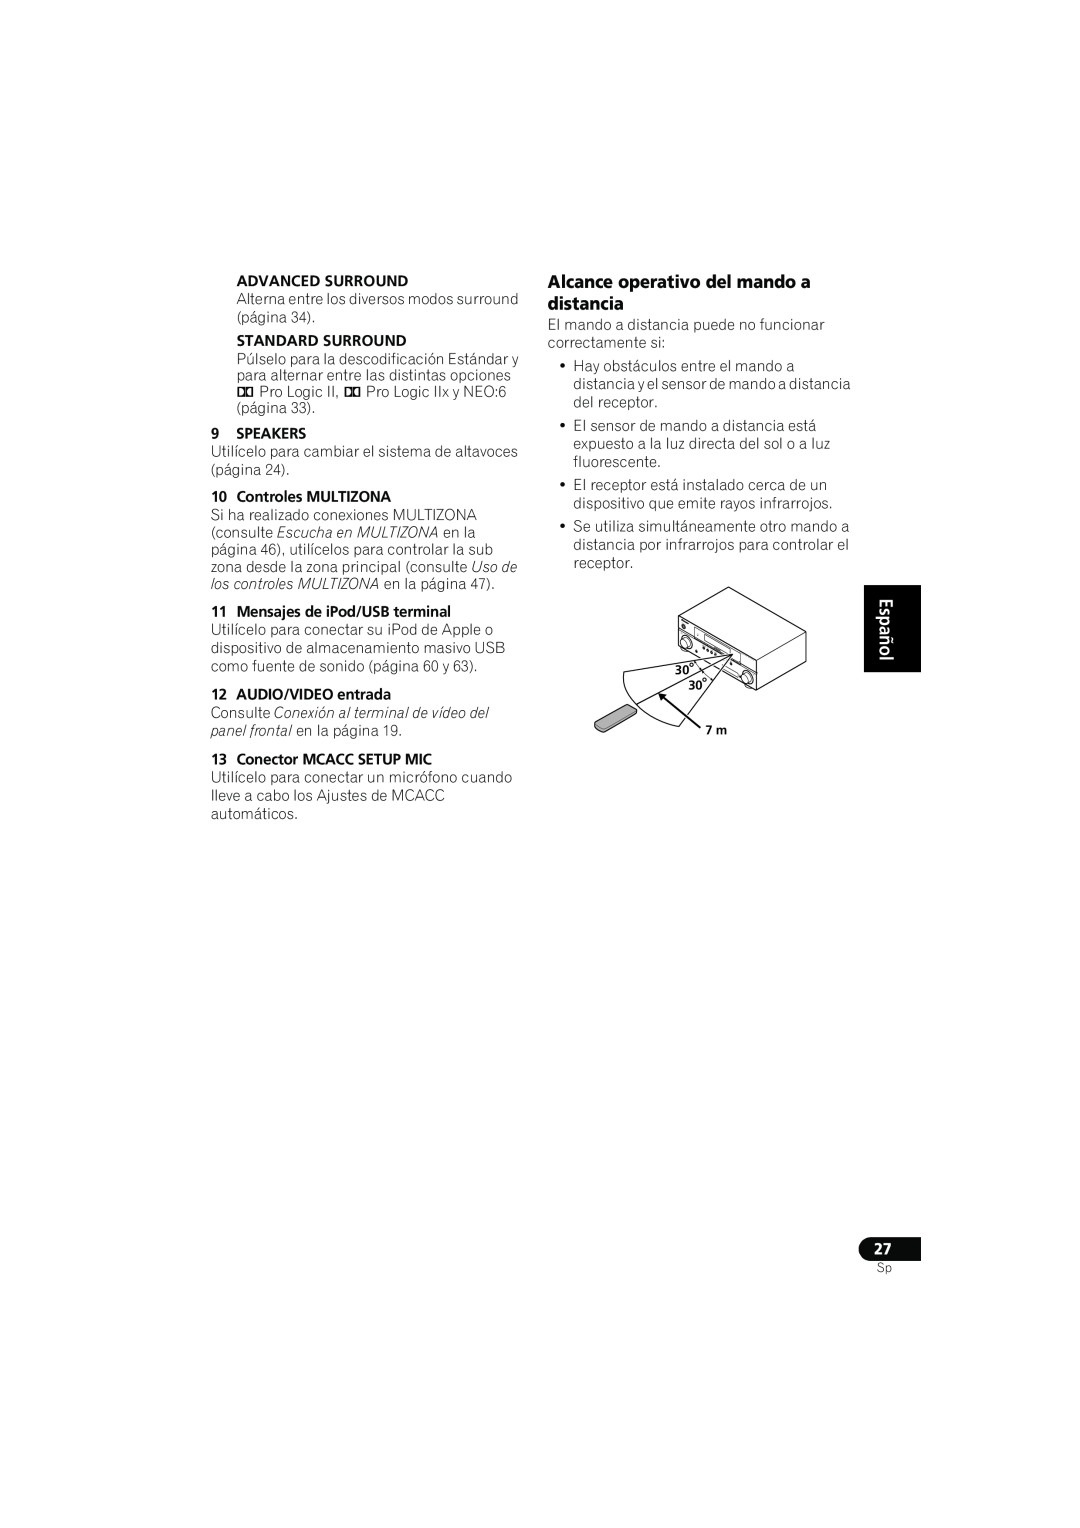 Pioneer VSX-819H-S manual Alcance operativo del mando a distancia, Advanced Surround, Standard Surround, Speakers 